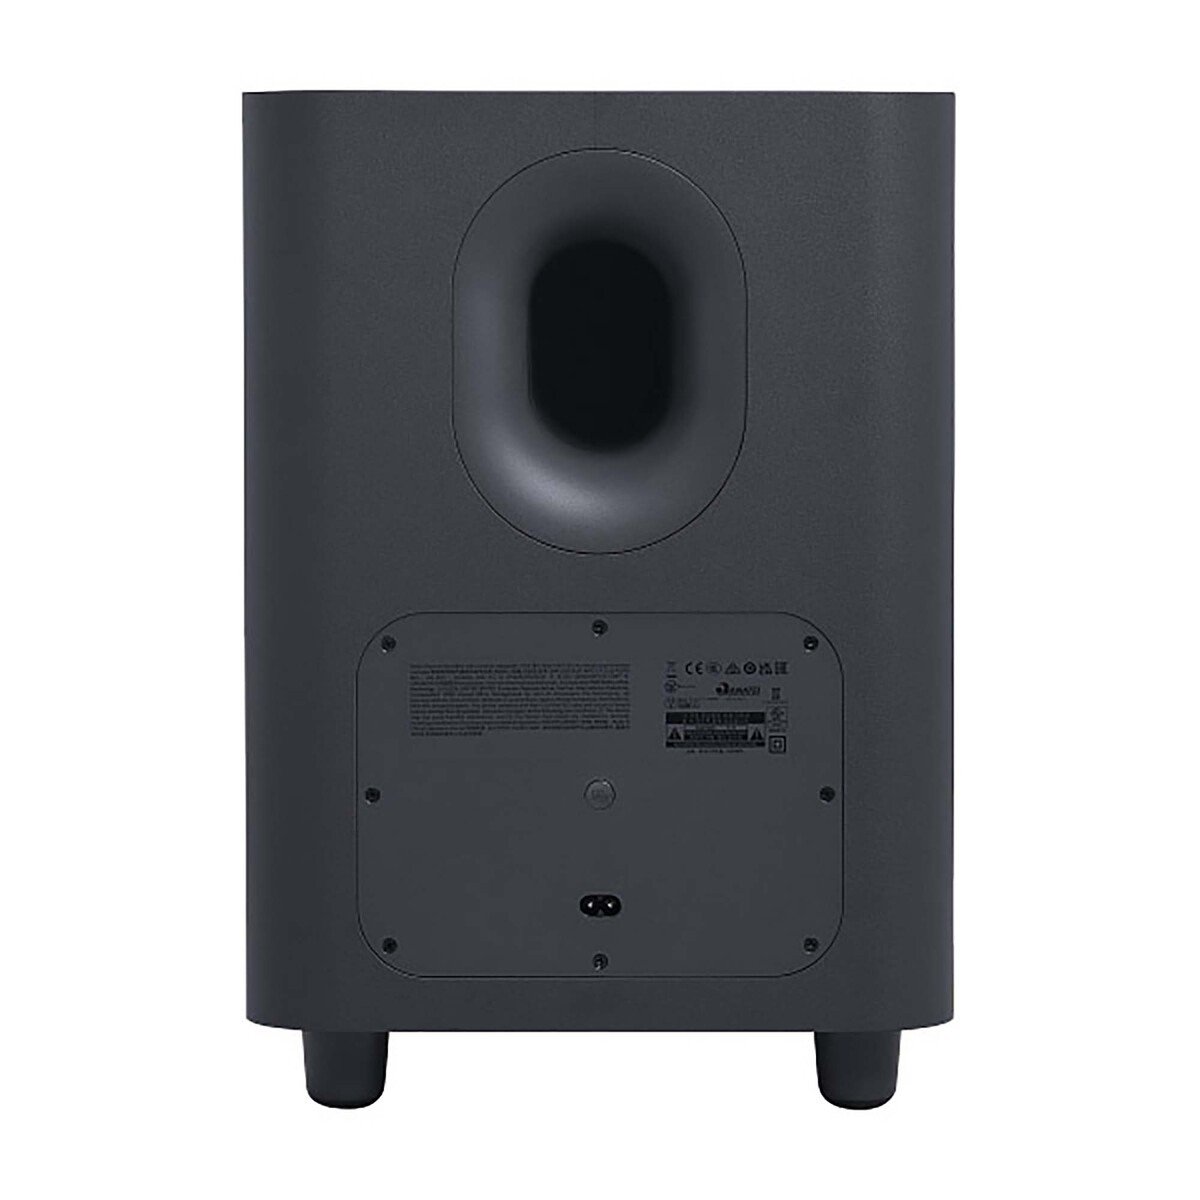 جي بي ال بار 1000 7.1.4 نظام المسرح المنزلي مع مكبرات صوت محيطية قابلة للفصل ،بتقنية  MultiBeam ™ ، و Dolby Atmos® ، و DTS: X